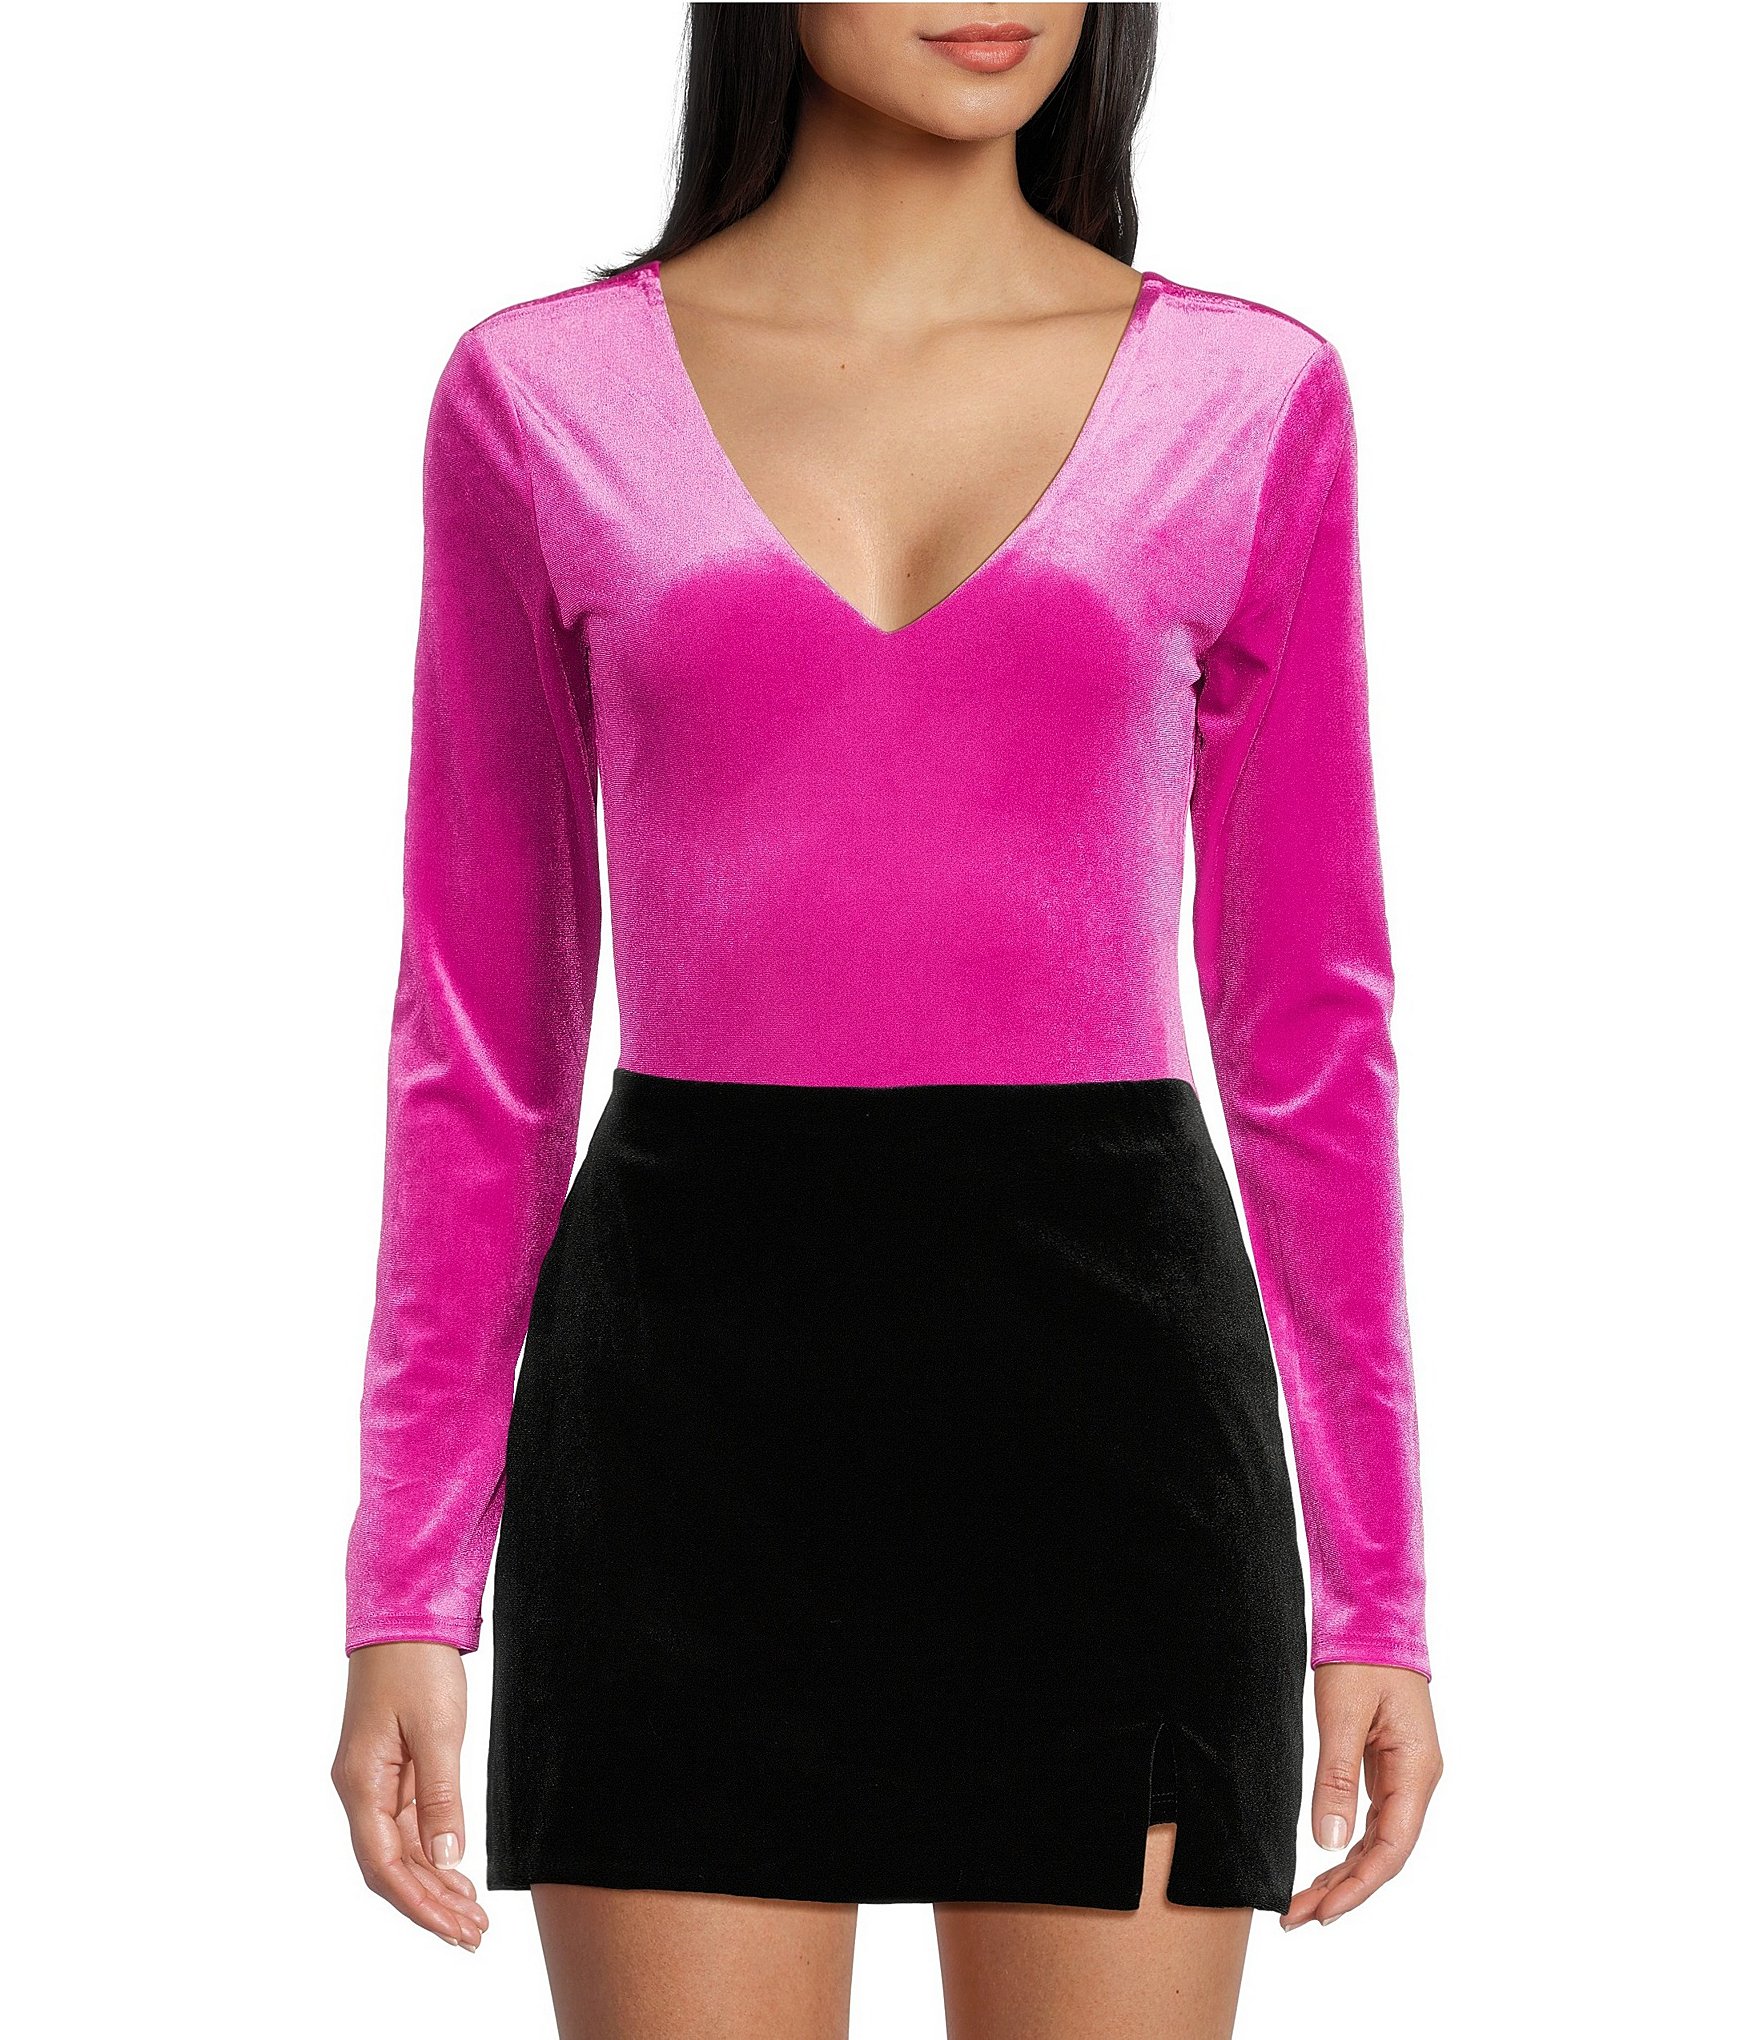 Blush Pink Bodysuit - Crushed Velvet Bodysuit - Long Sleeve Deep V